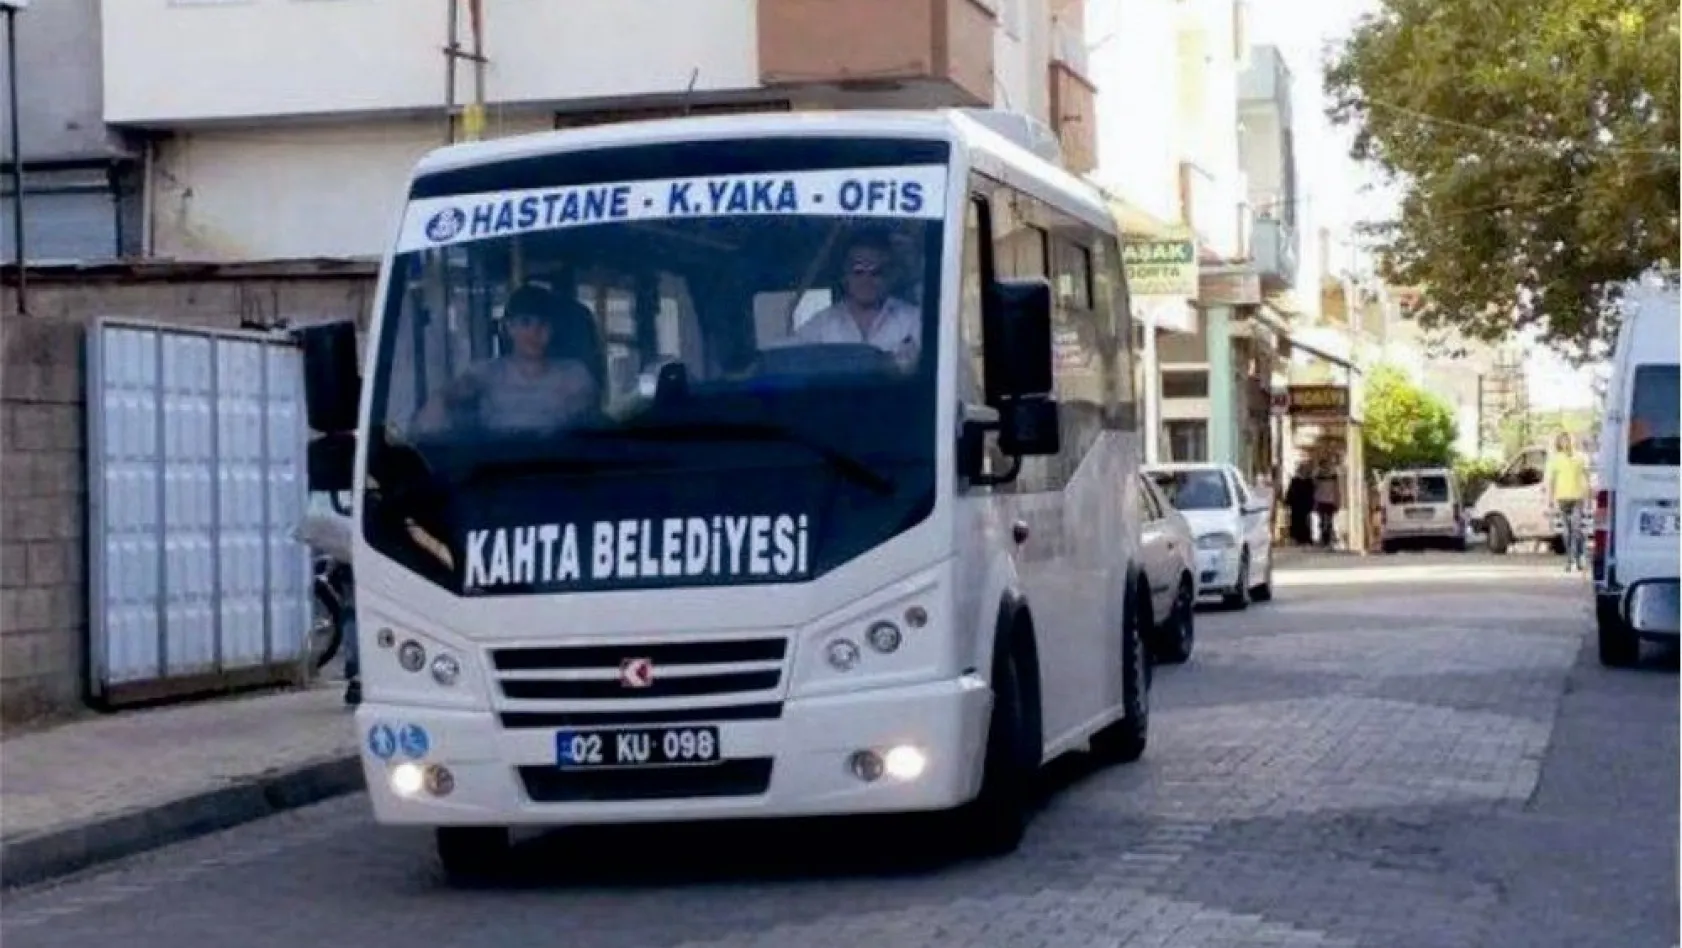 Kahta'da toplu taşıma araçları bayramın ilk 3 günü ücretsiz
